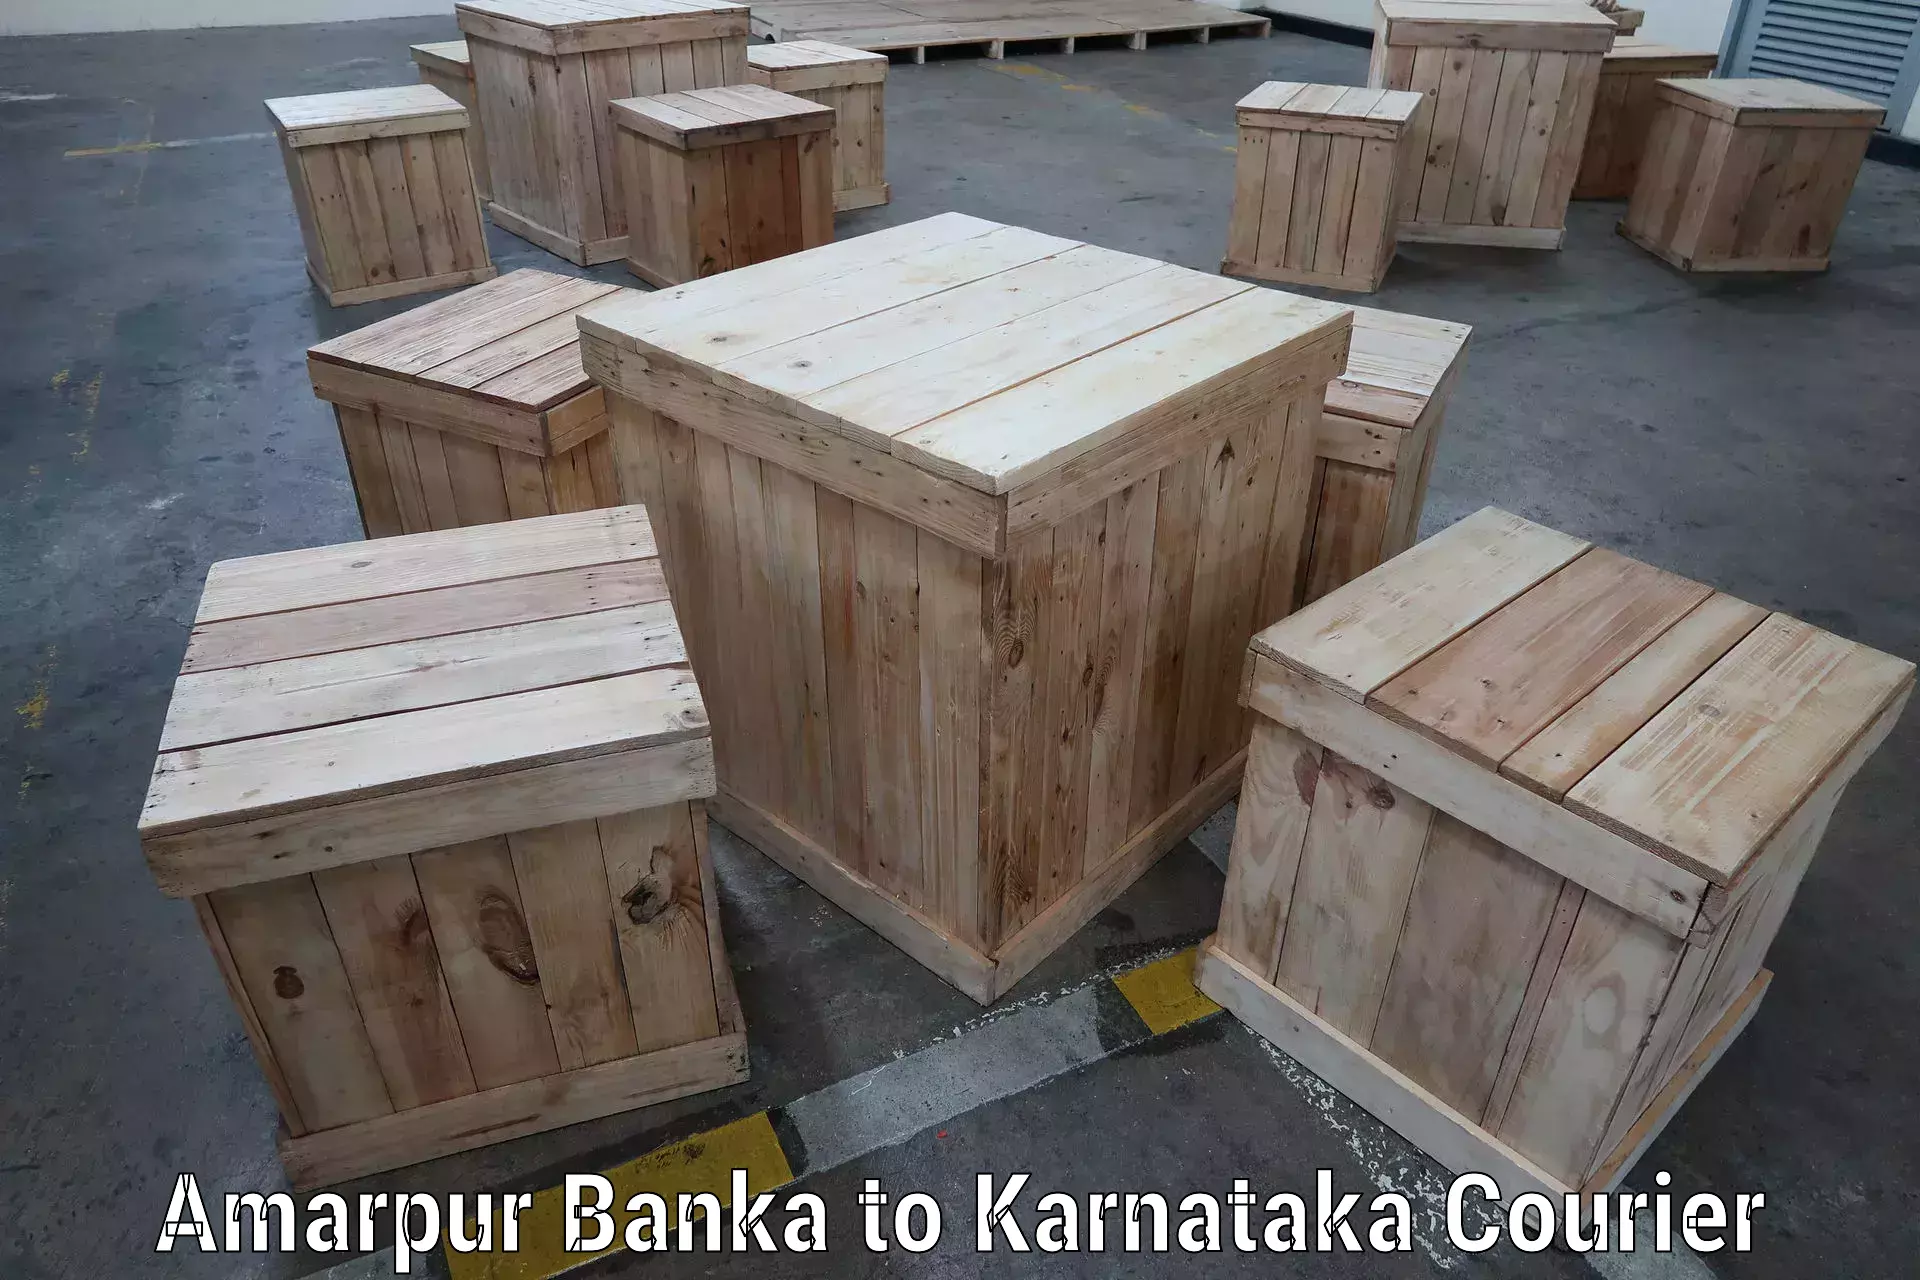 Automated parcel services Amarpur Banka to Yenepoya Mangalore